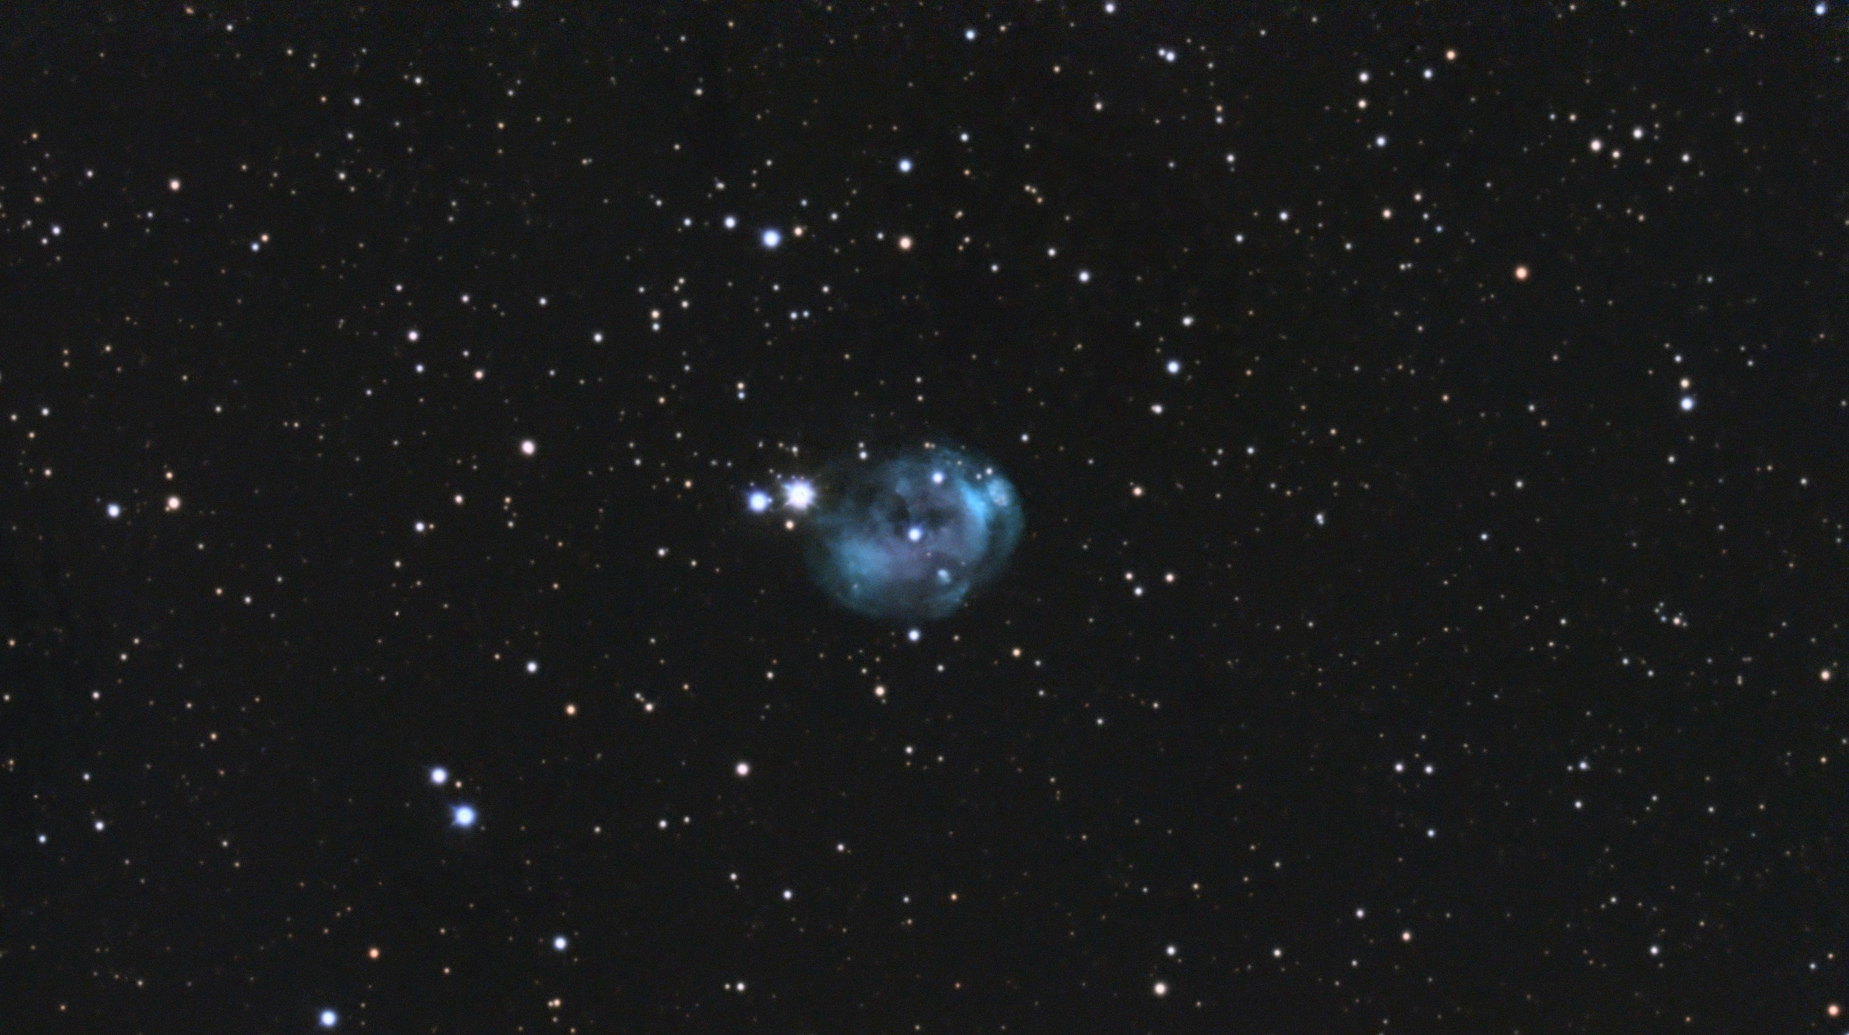 6513cc55d61f7_NGC7008-Meade-neptune464_RGB--Siril-pix-finale.jpg.6925f3584e8d96641bcbc337e9fcb6b9.jpg